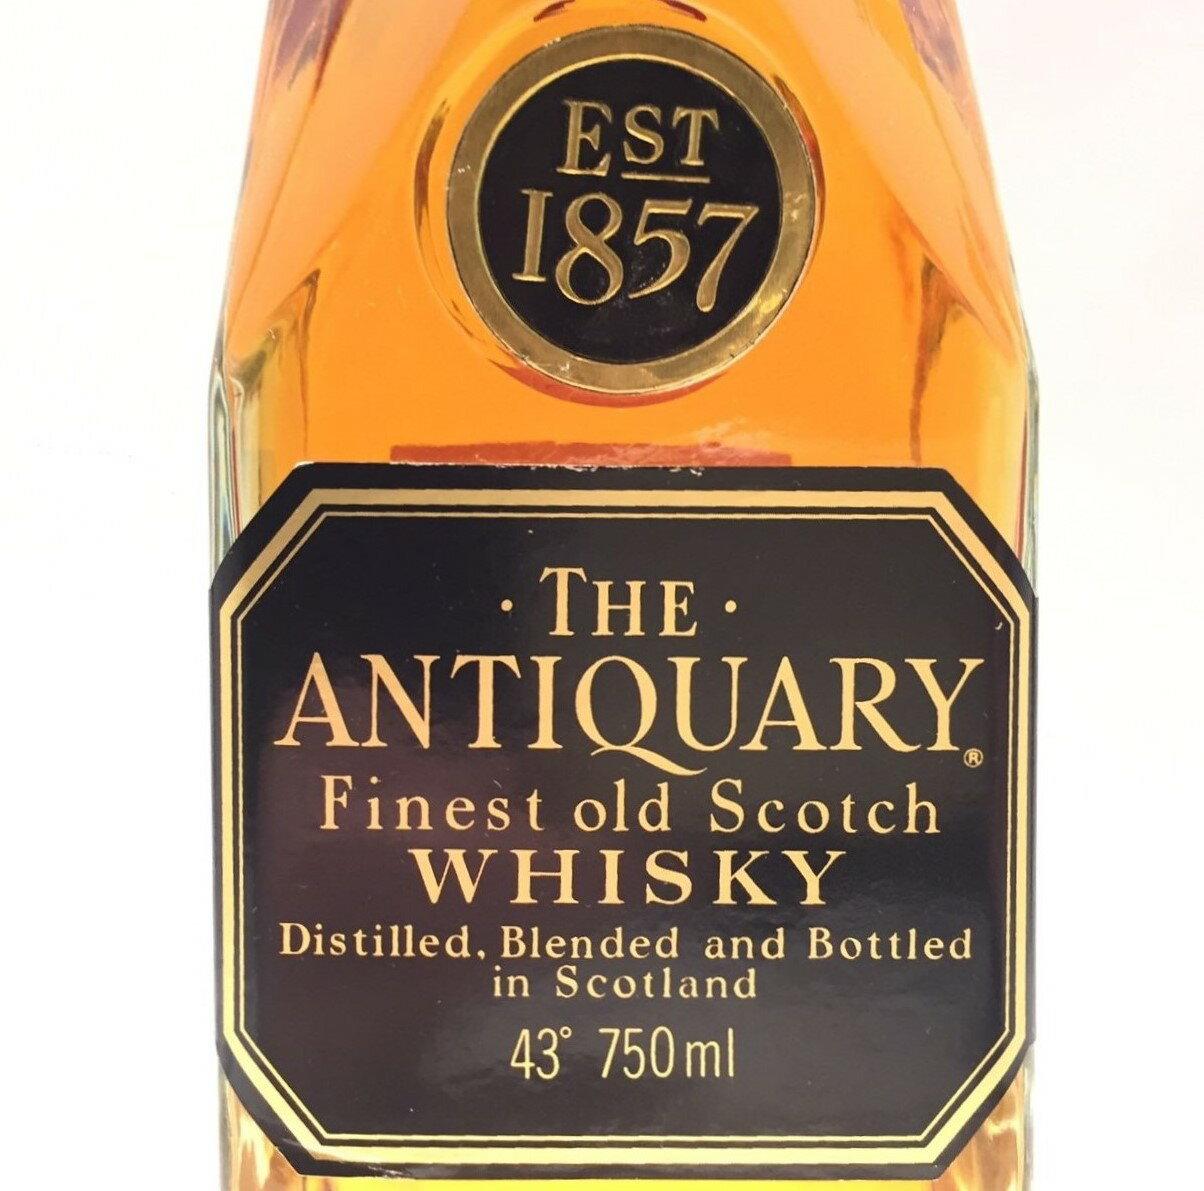 【進口年度1985年】アンティクァリーTHE ANTIQUARYFinest old Scotch WHISKY43°／750ml 2